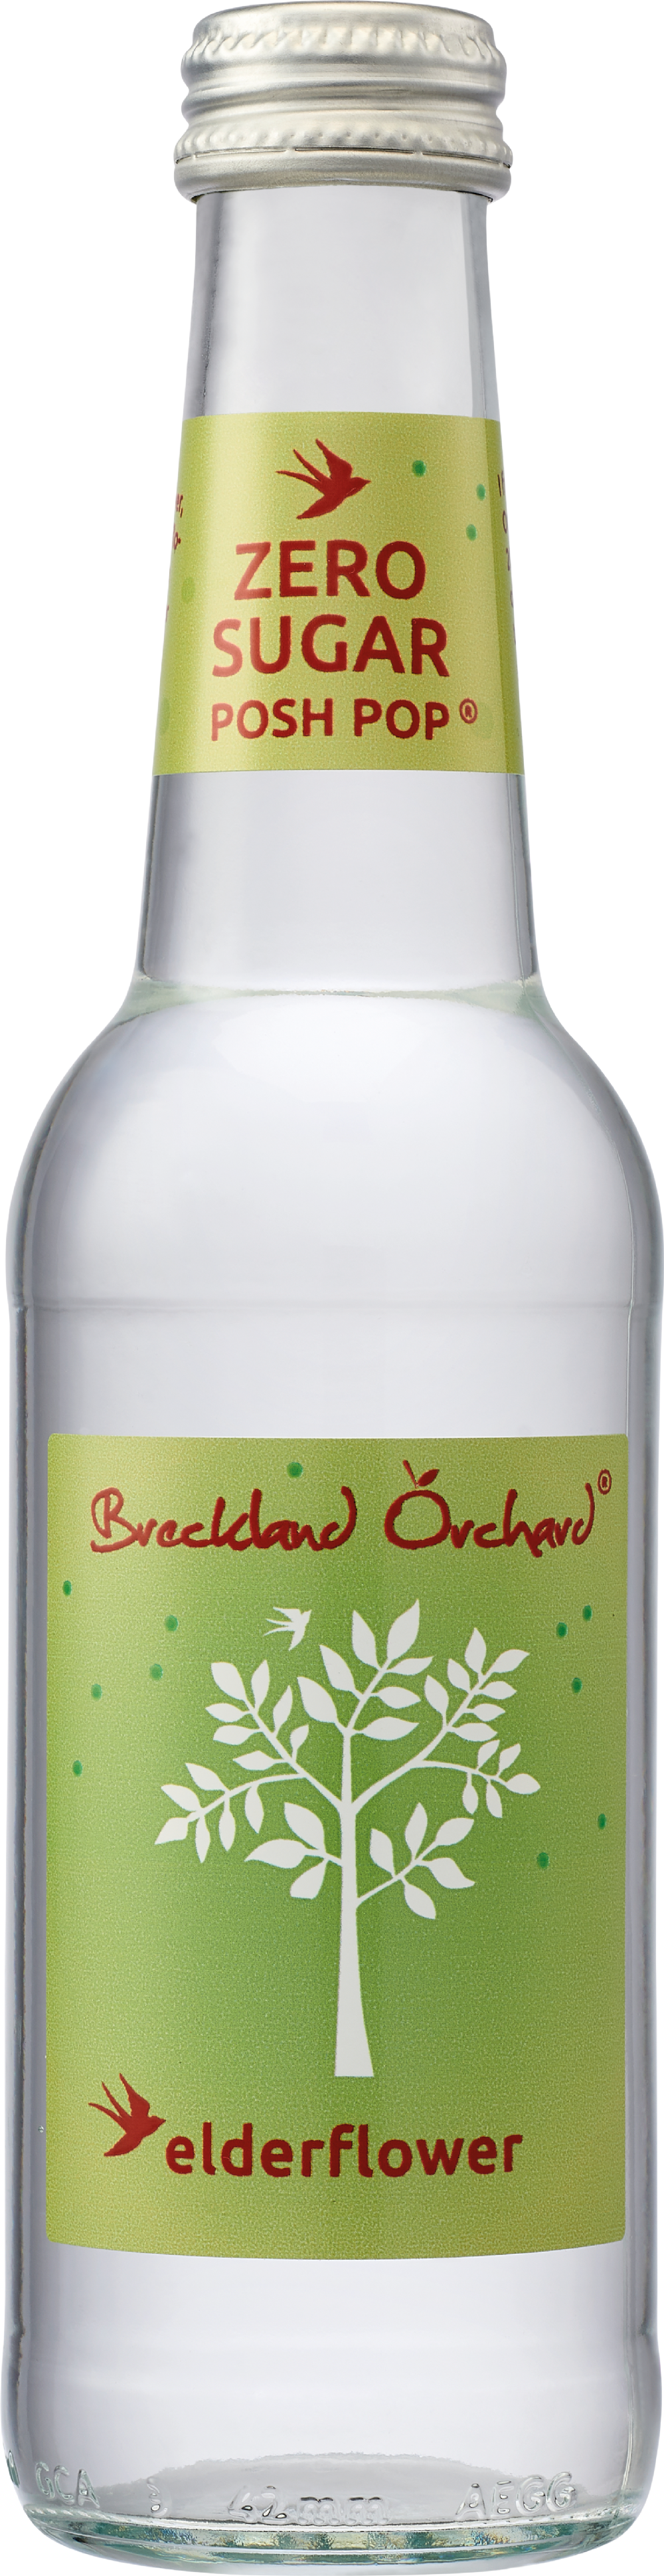 BRECKLAND ORCHARD Zero Sugar Posh Pop Elderflower 275ml